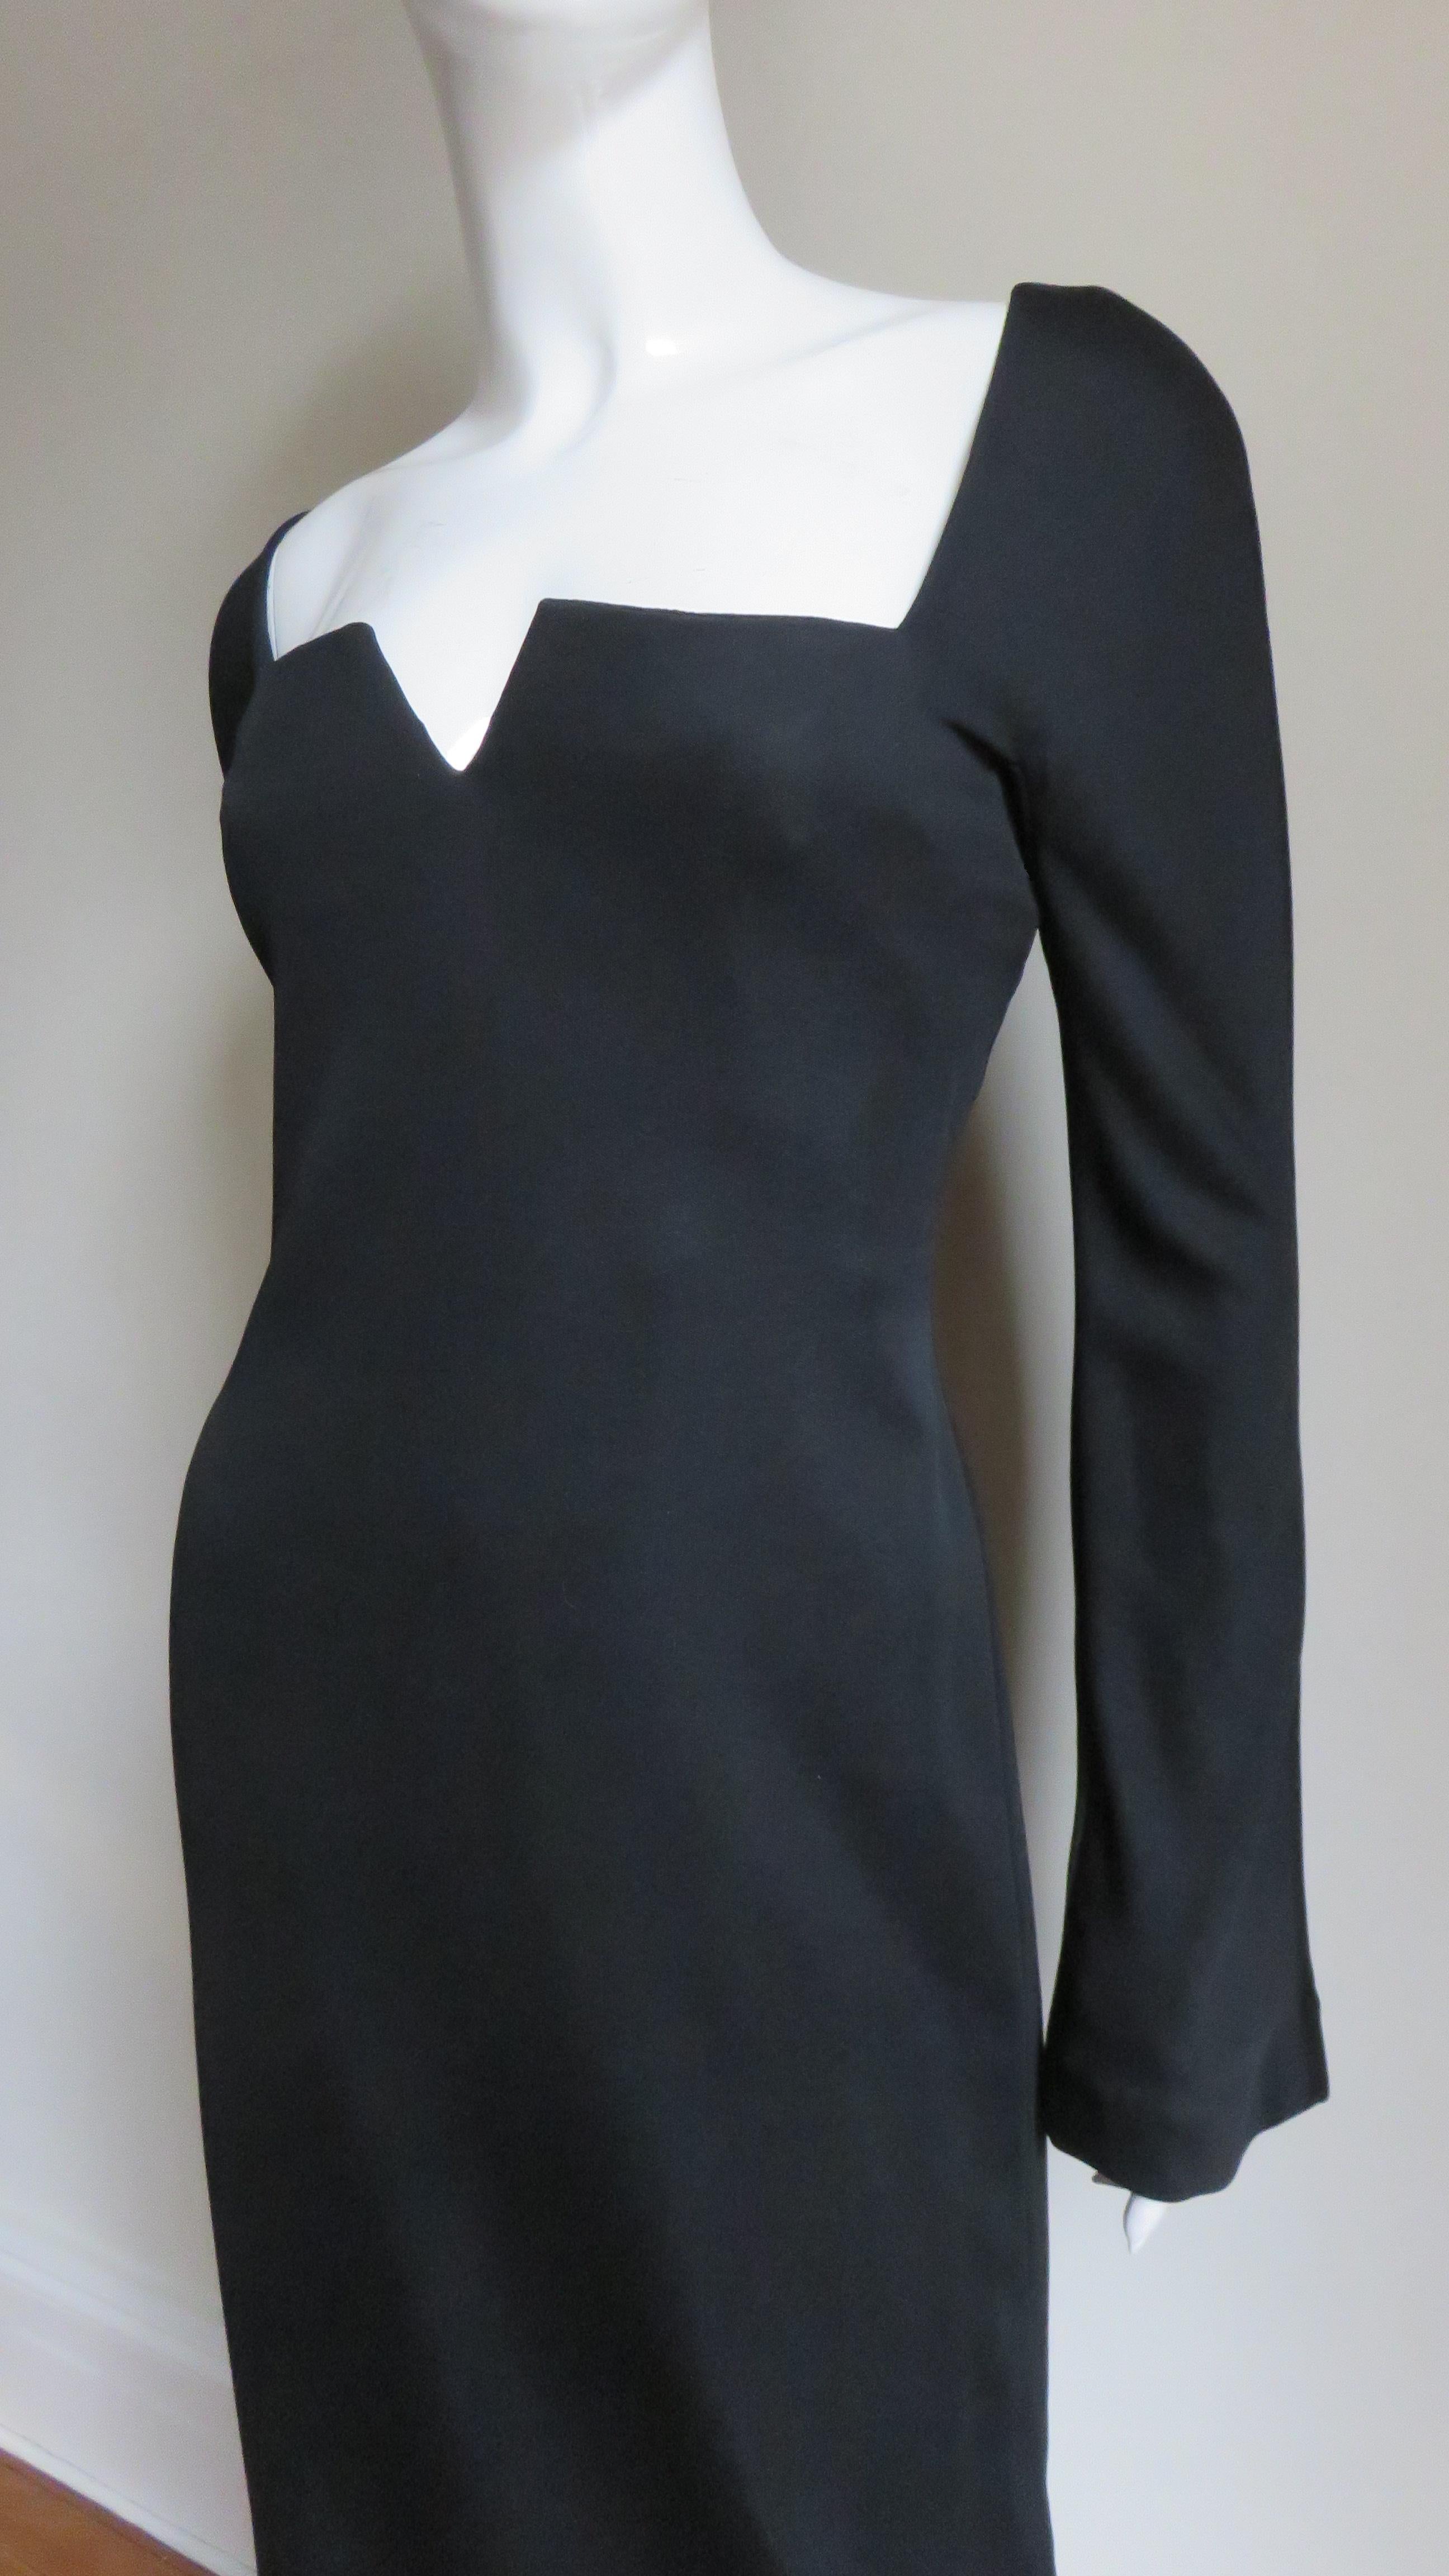 Une fabuleuse robe en jersey de soie noire signée Gianni Versace. Il présente une encolure carrée avec un centre cranté et de longues manches subtilement corsetées. La robe est semi-montante, avec une armature intérieure pour le maintien, une